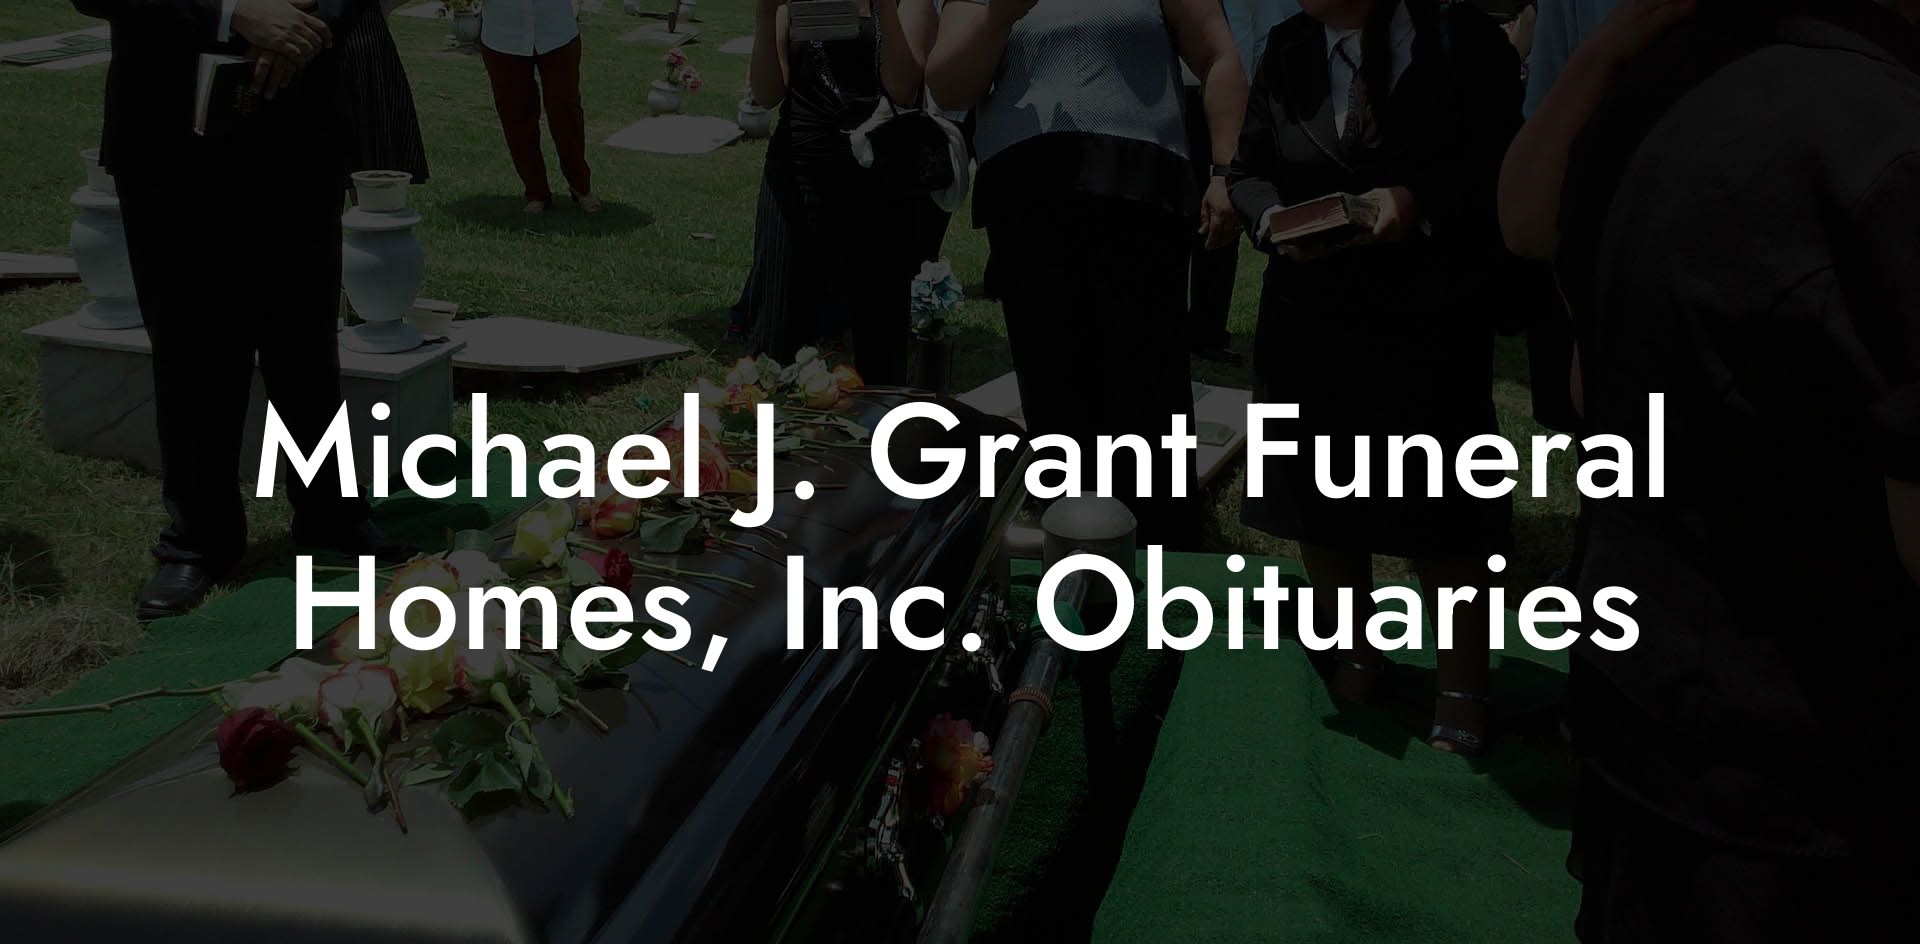 Michael J. Grant Funeral Homes, Inc. Obituaries